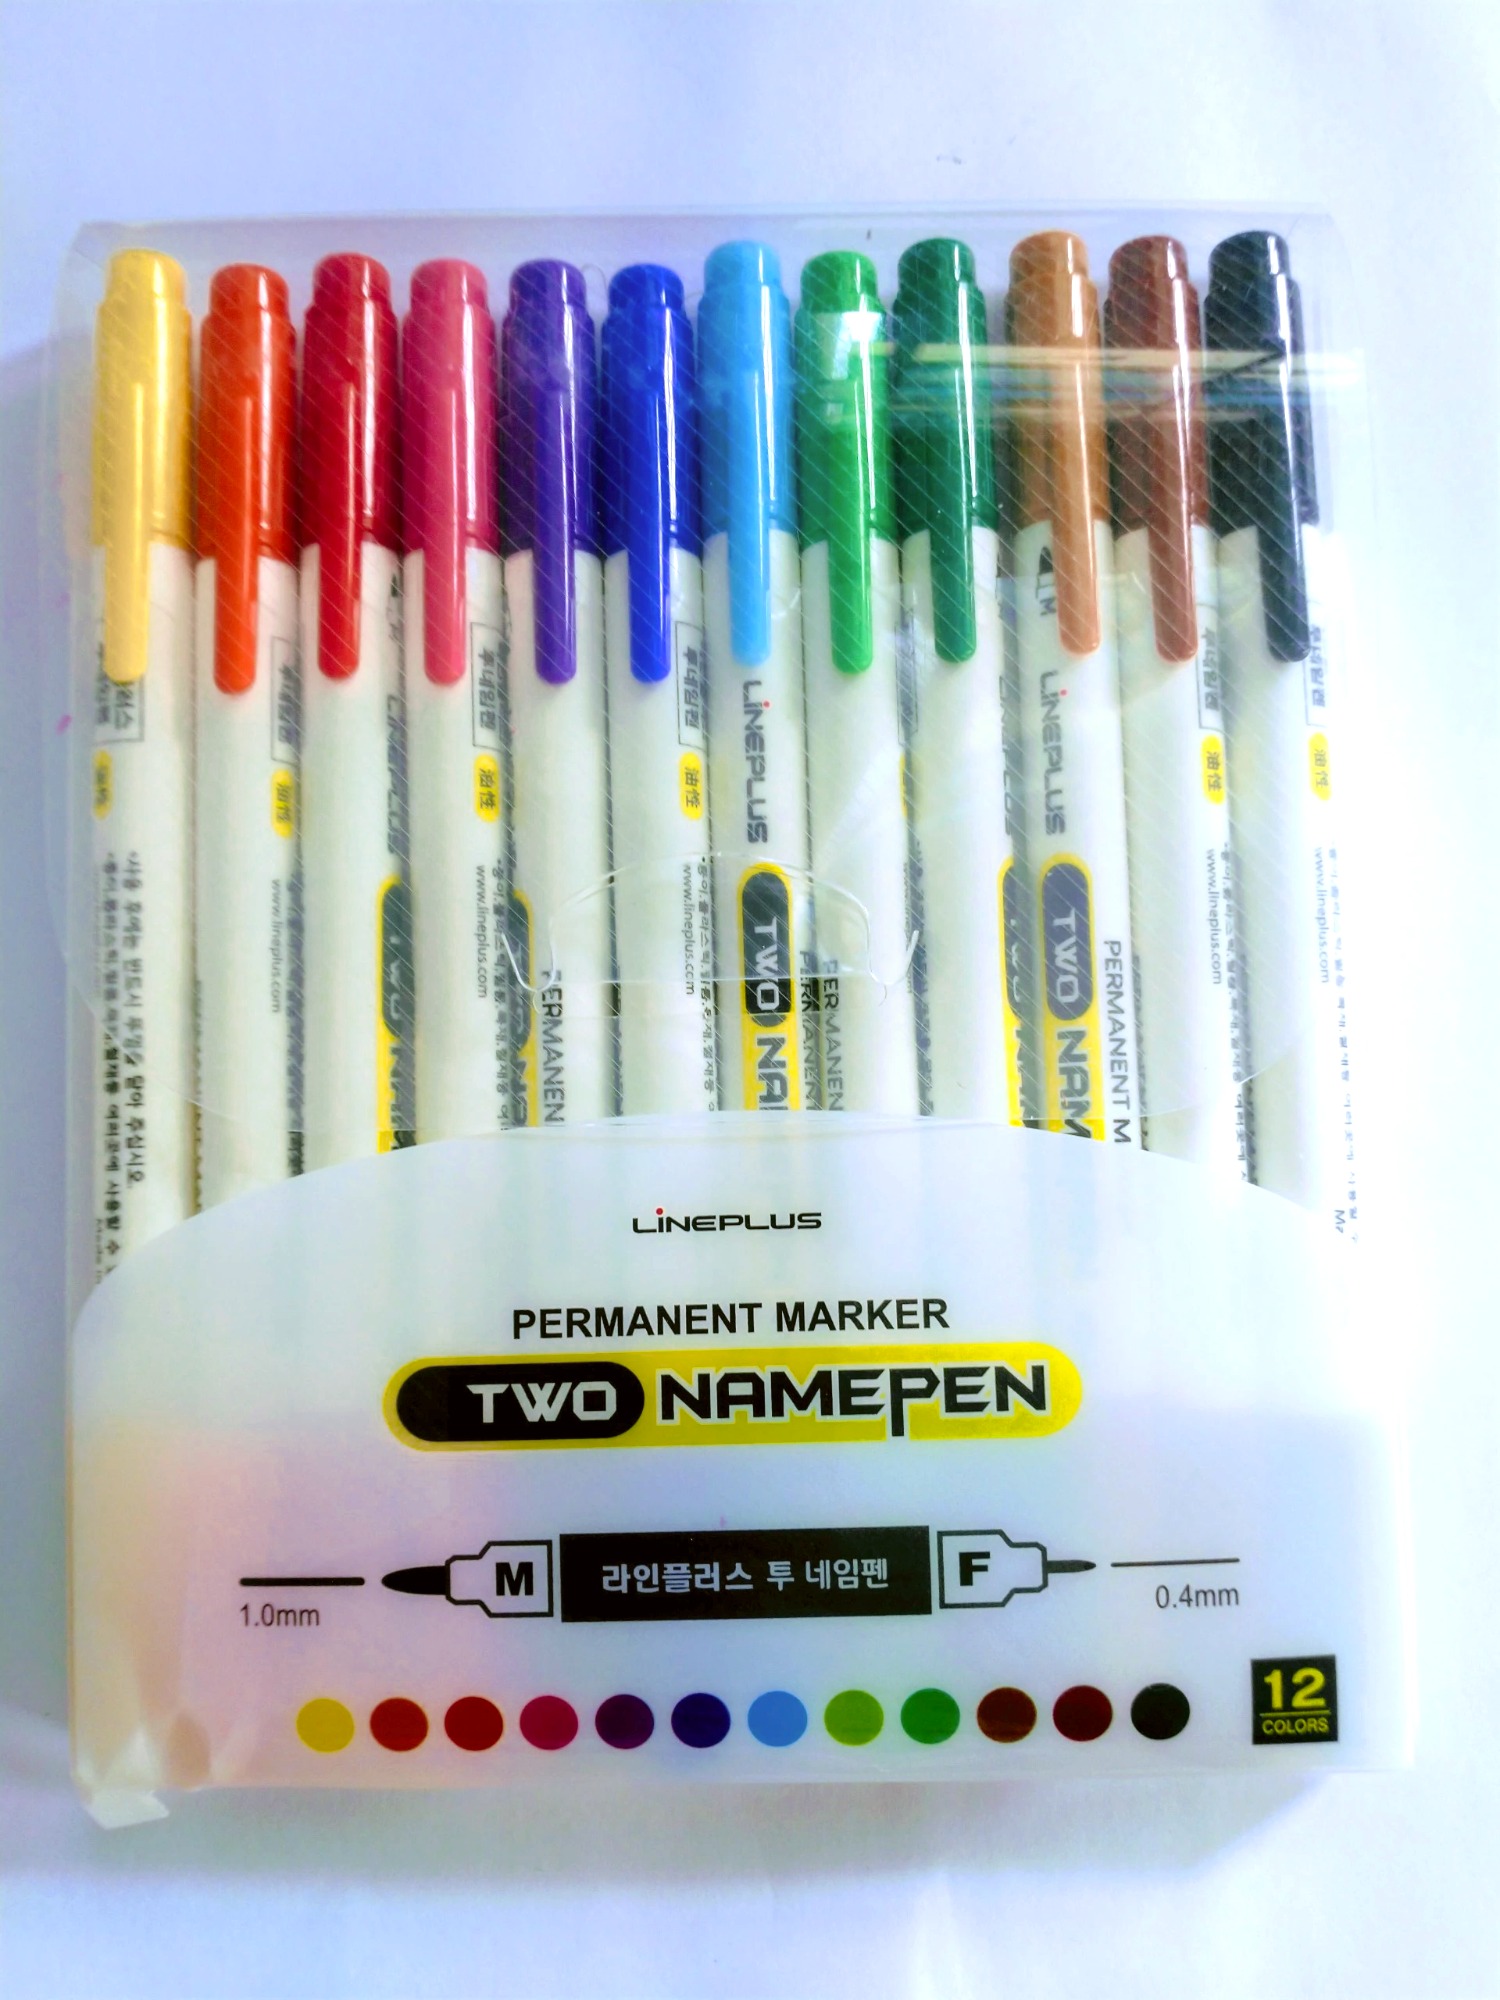 Bộ Set bút dạ dầu chắc chắn sẽ khiến bạn hài lòng. Với chất lượng và đa dạng màu sắc, bạn sẽ có được những bức vẽ chuyên nghiệp và sáng tạo hơn. Hãy xem hình ảnh để biết thêm chi tiết về những chiếc bút này!